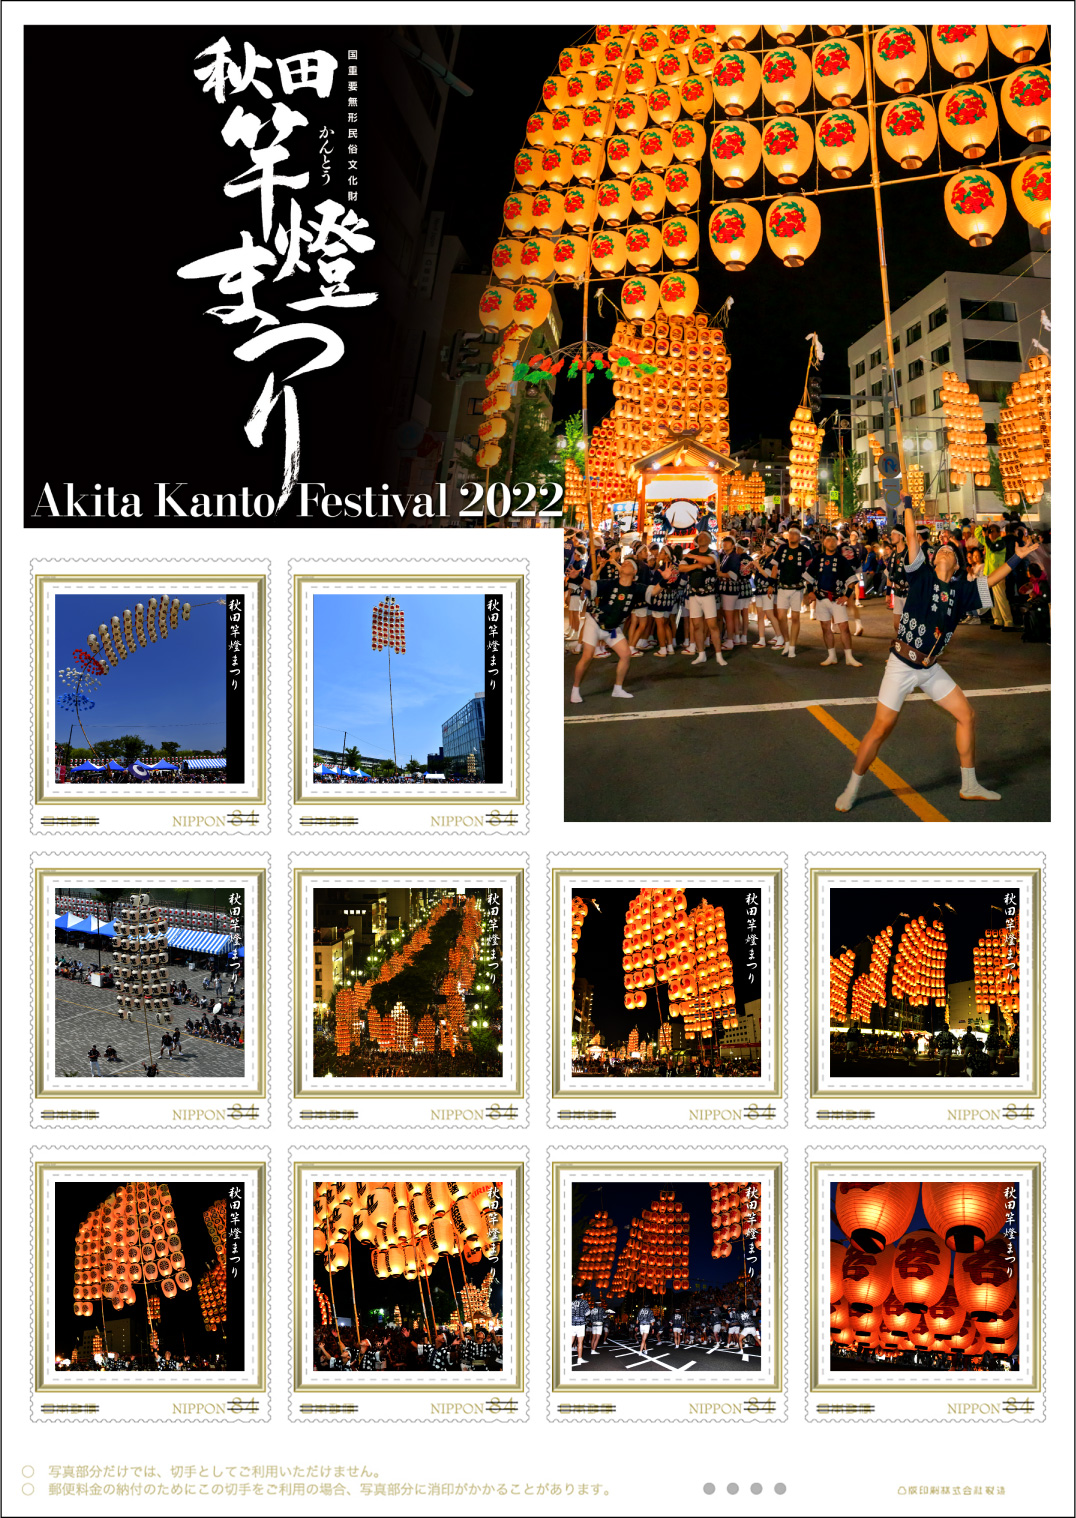 オリジナル フレーム切手「秋田竿燈まつり Akita Kanto Festival 2022」の販売開始および贈呈式の開催